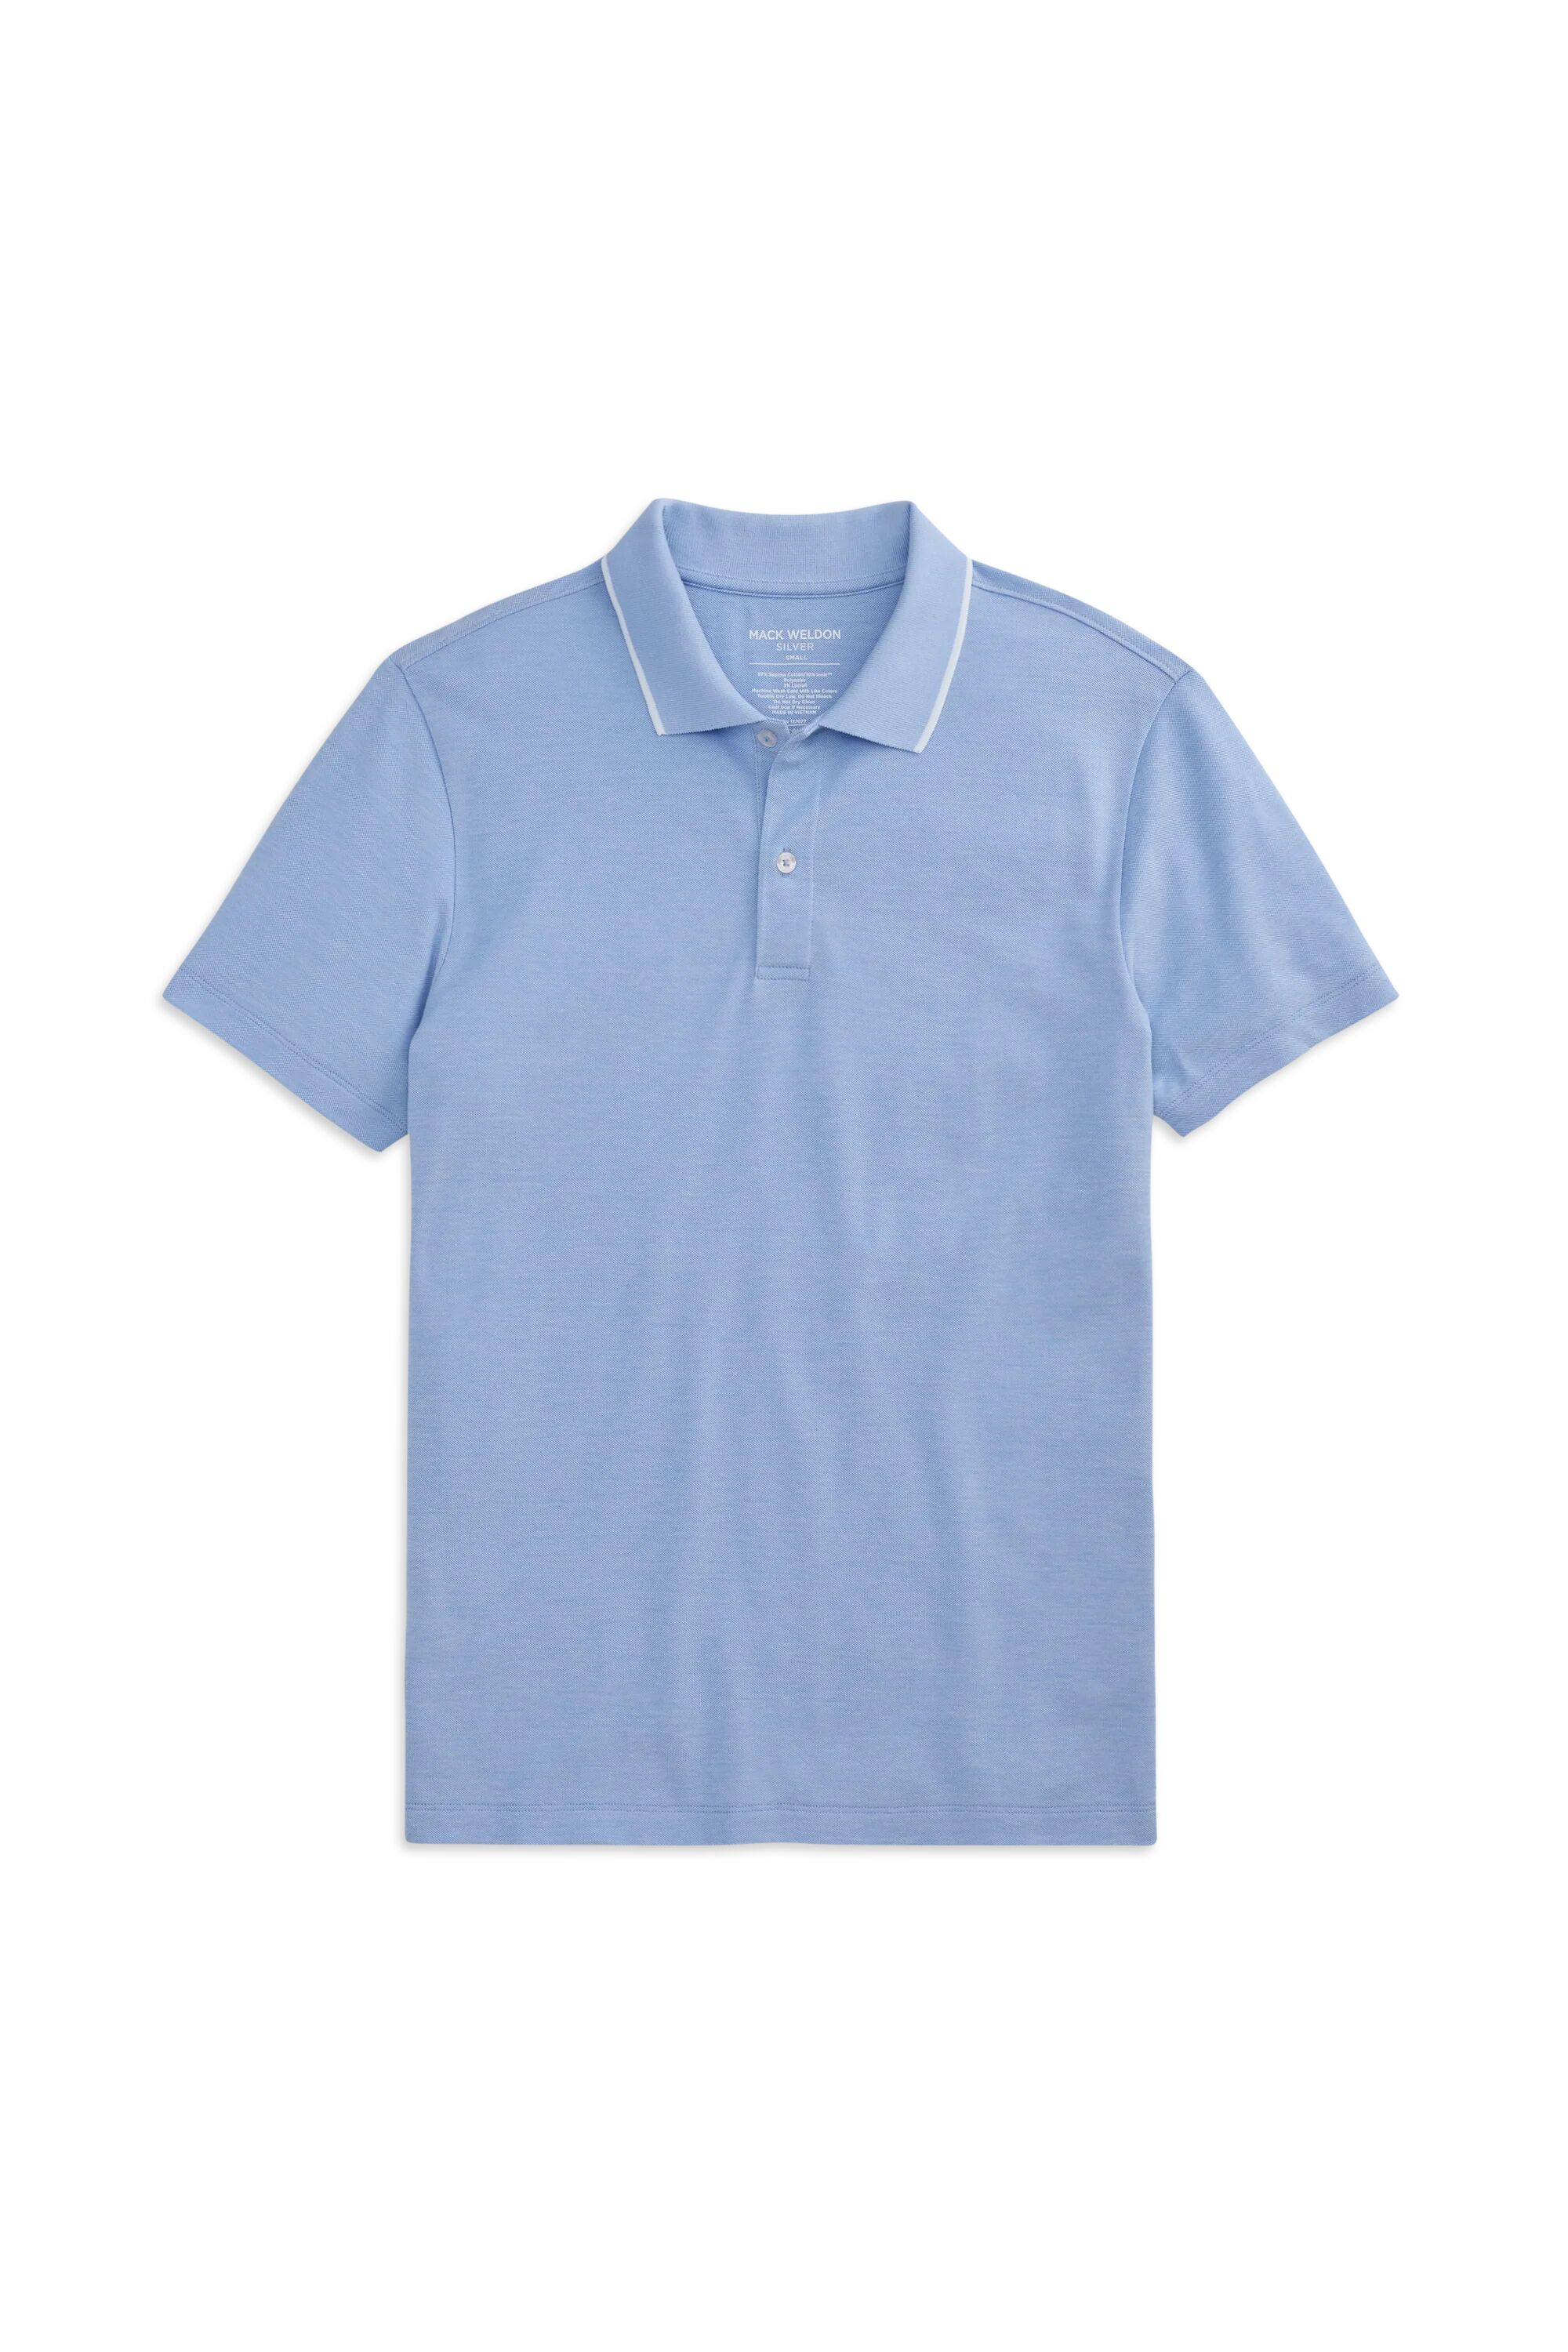 SILVER Pique Polo Chambray White Oxford Shirt, Size: XL Mack Weldon - Gender: male